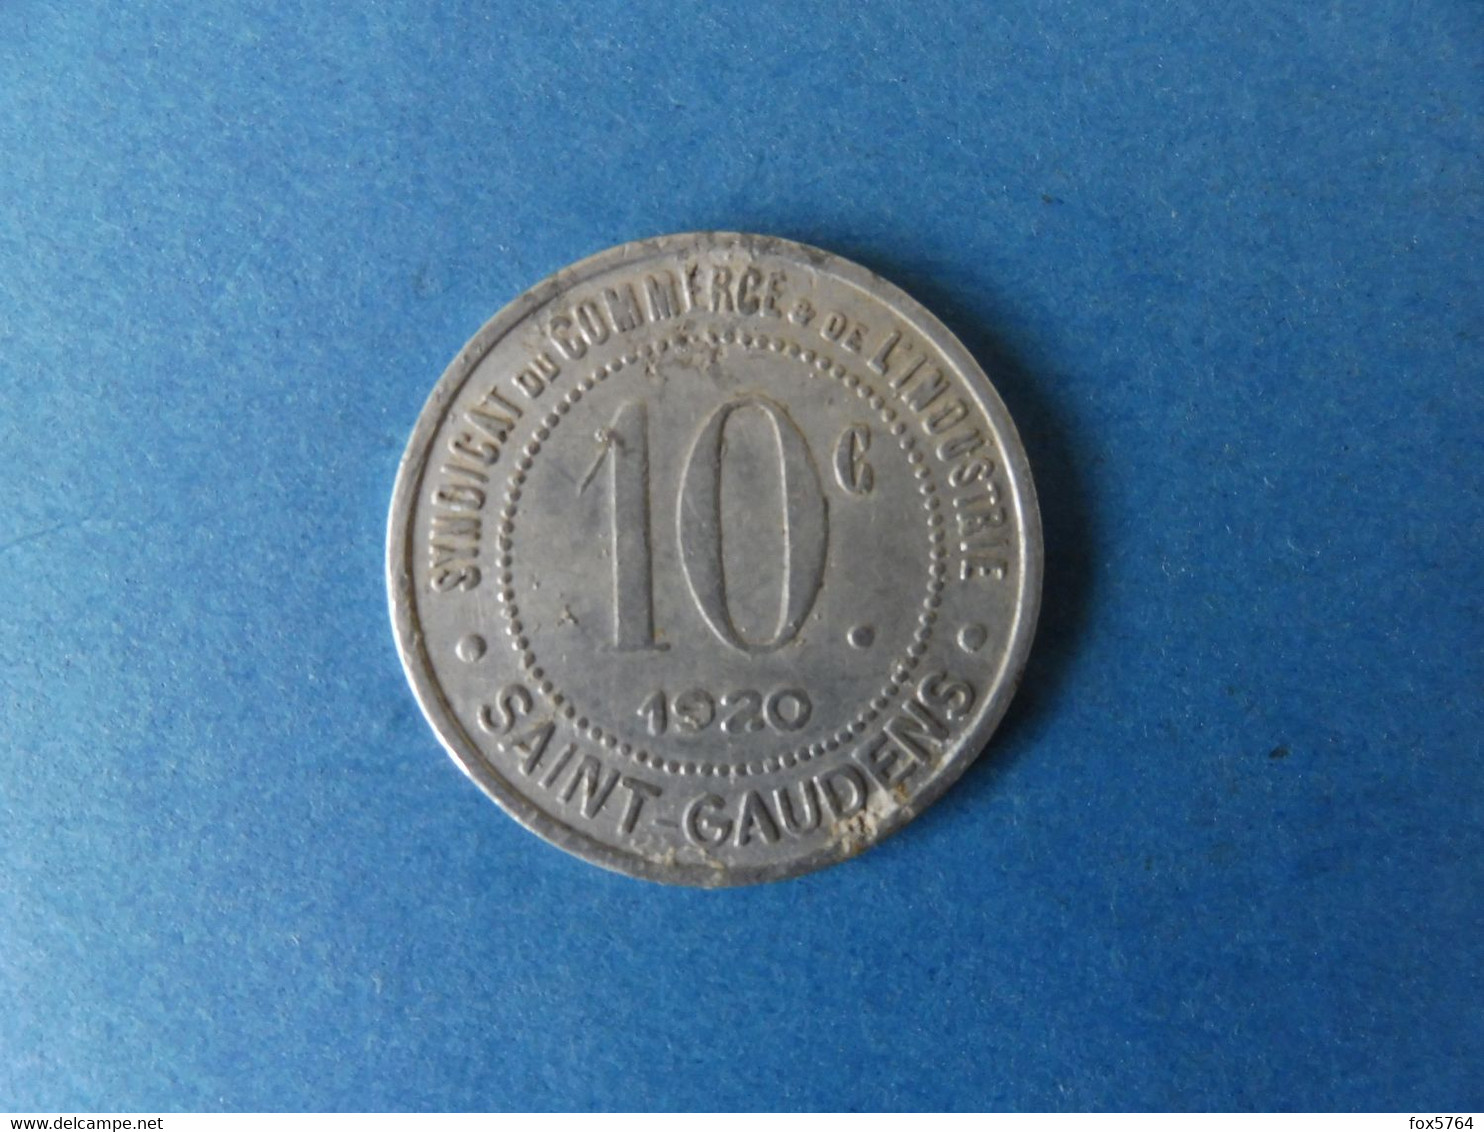 MONNAIE DE NECESSITE / SAINT-GAUDENS / HAUTE-GARONNE / ORIGINALE / 1920 - Monétaires / De Nécessité